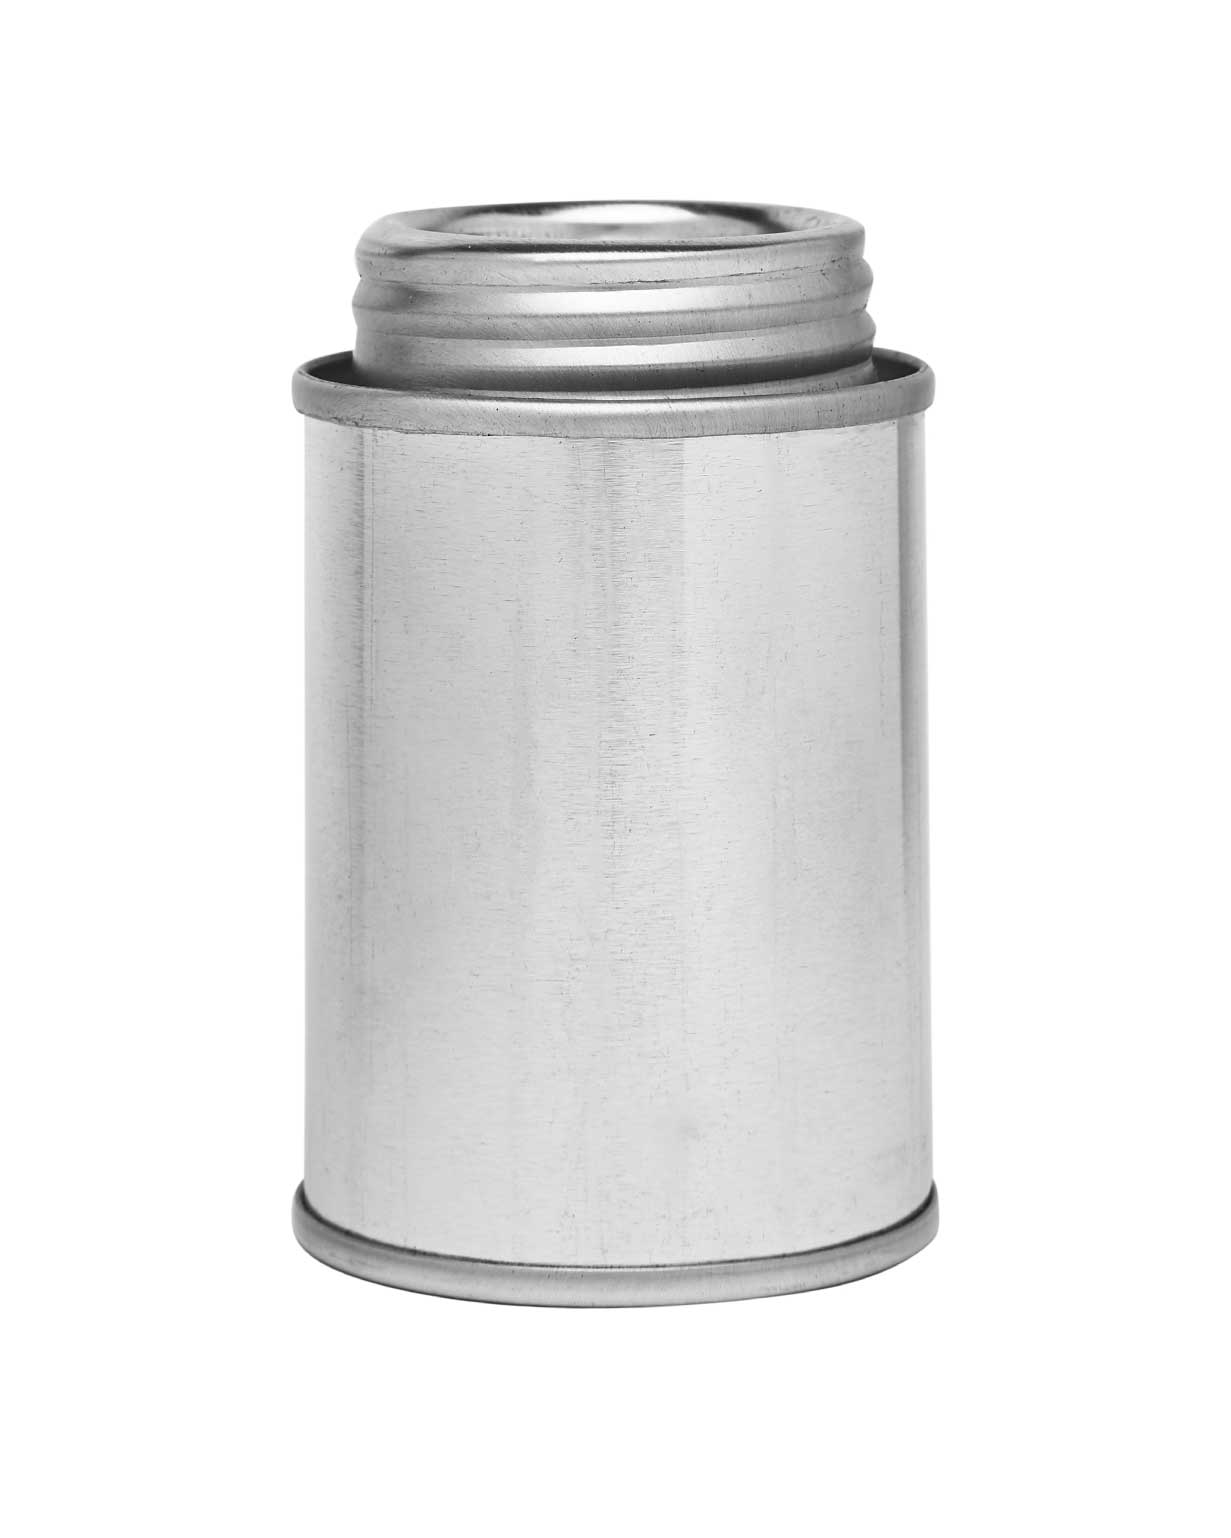 4 oz tin silver 1-3/4" 202x214 monotop can